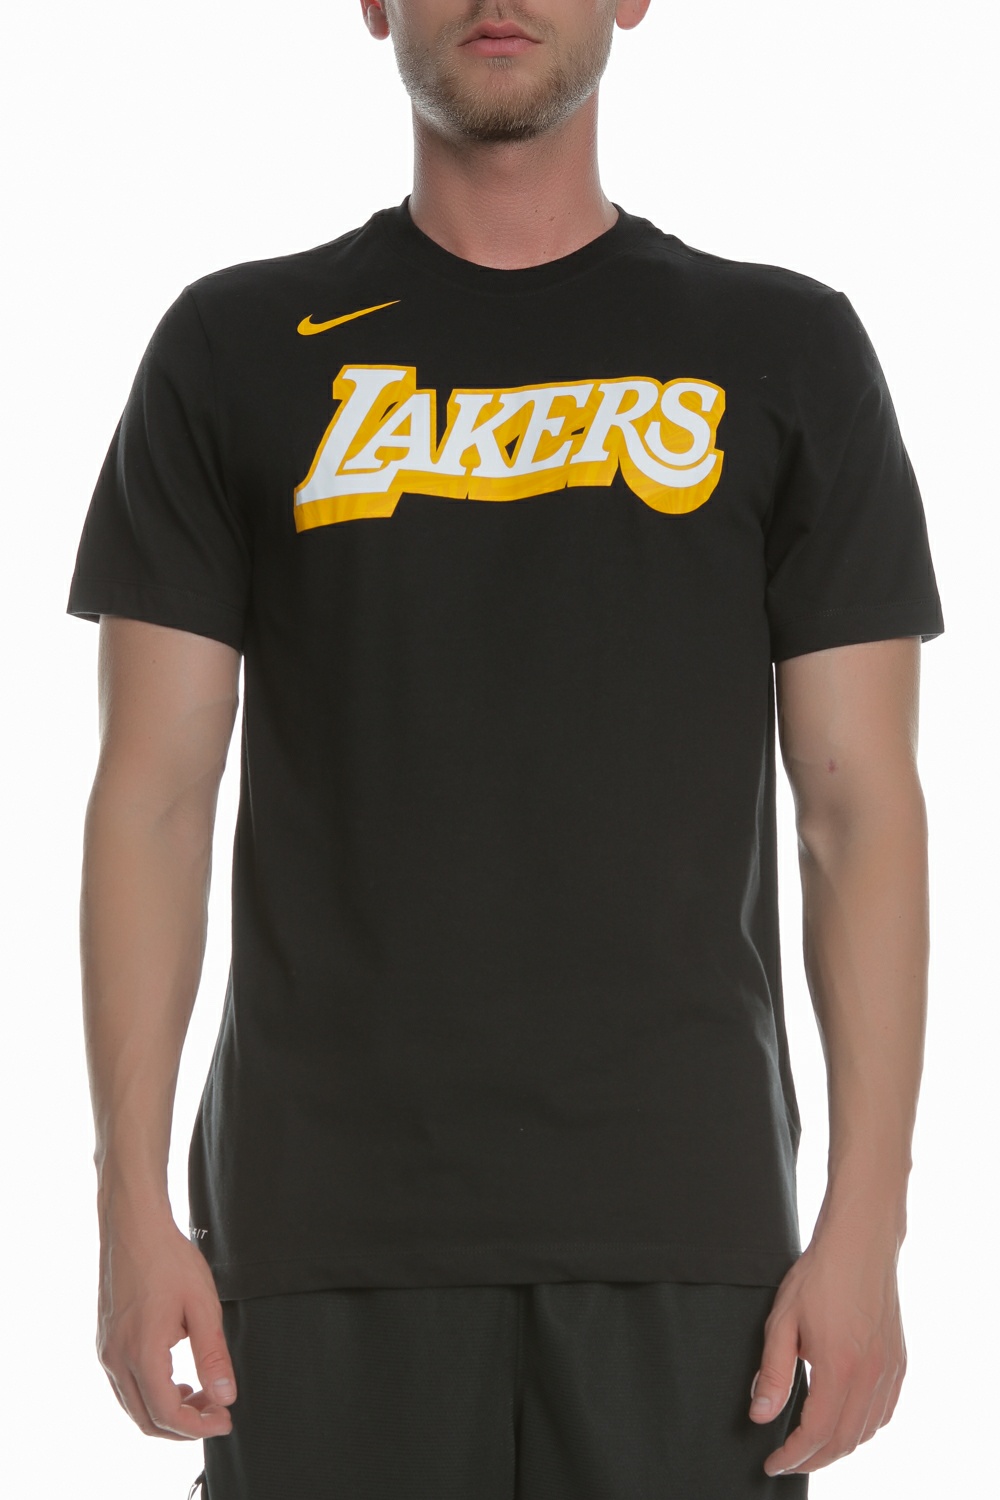 Ανδρικά/Ρούχα/Αθλητικά/T-shirt NIKE - Ανδρικό T-Shirt Nike Dri-FIT NBA μαύρο